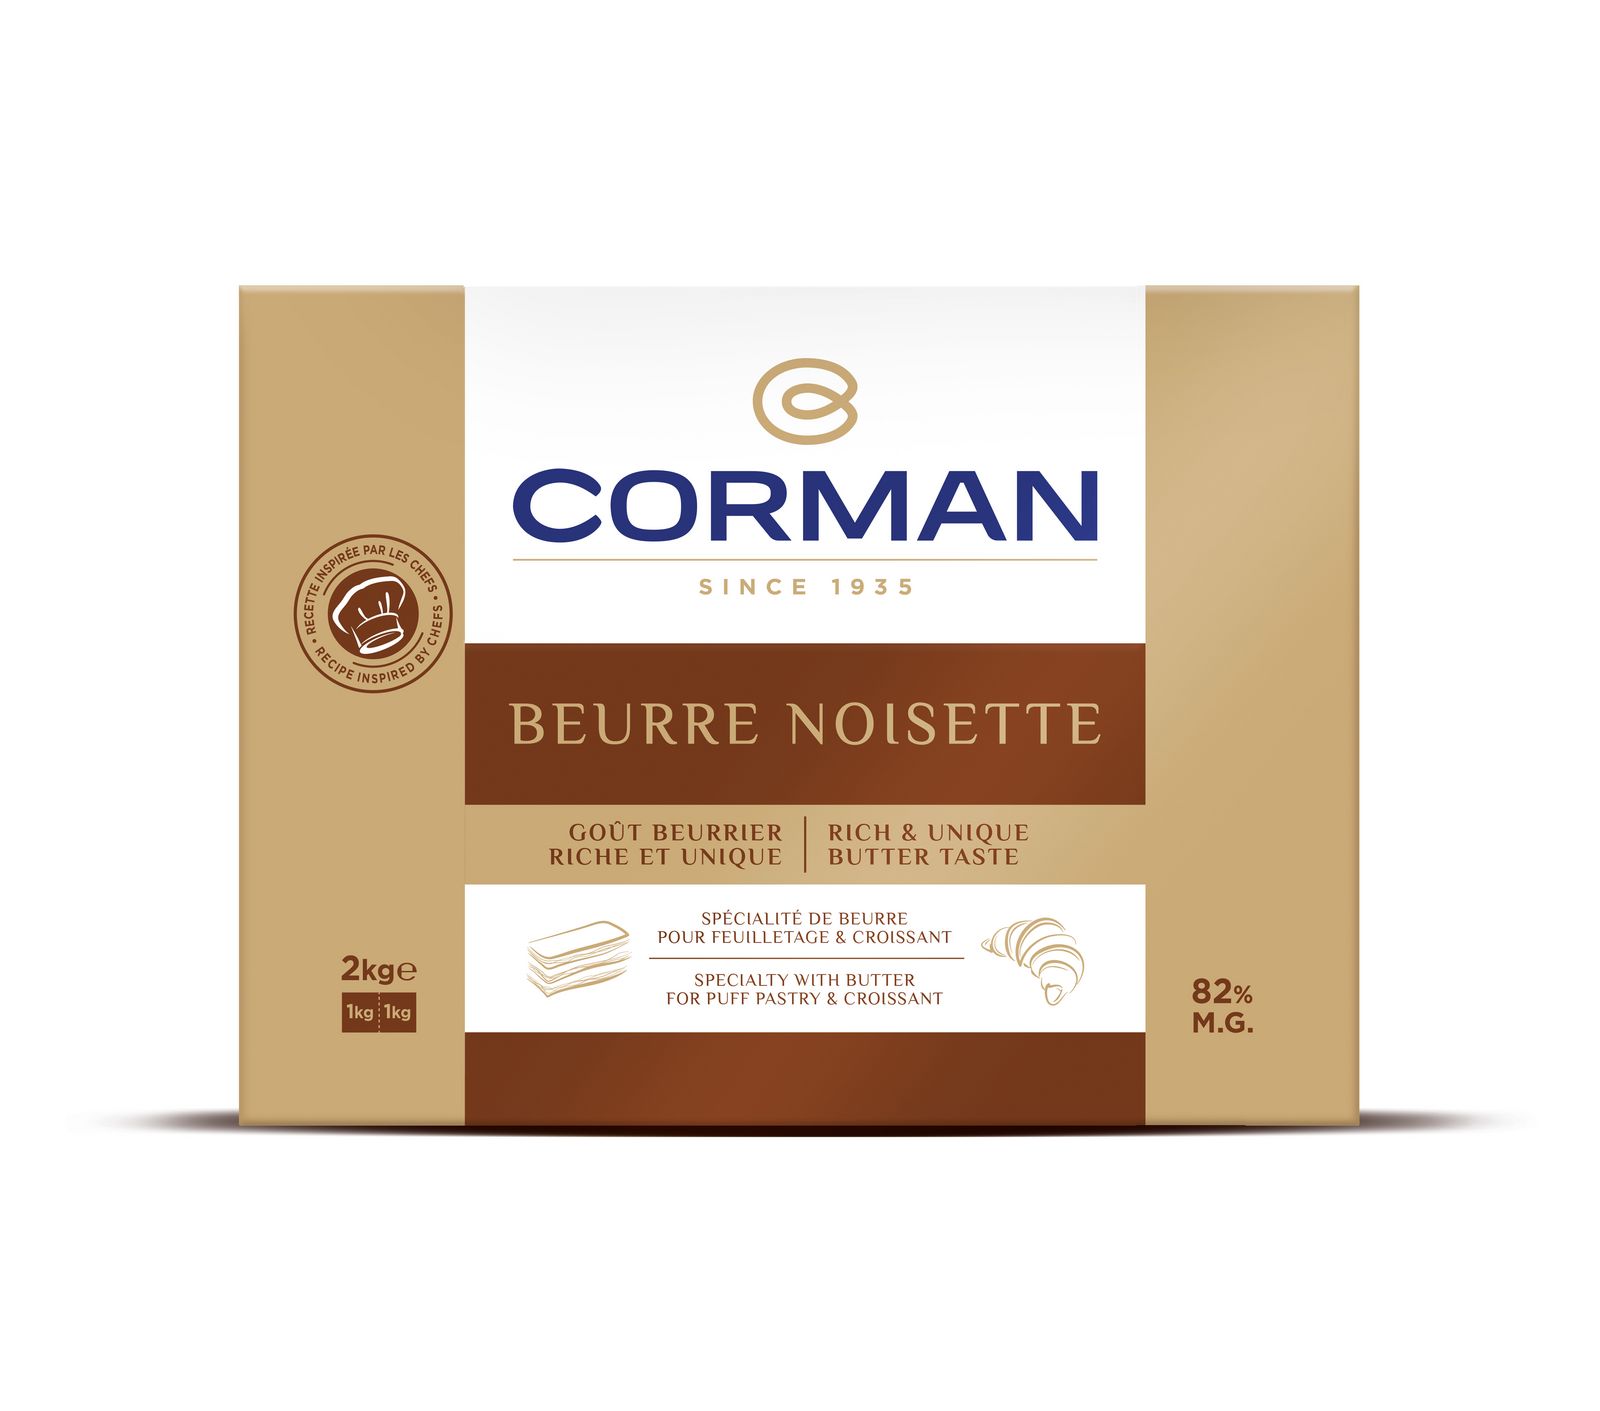 Beurre Noisette ou beurre Bio, Corman vous donne le choix